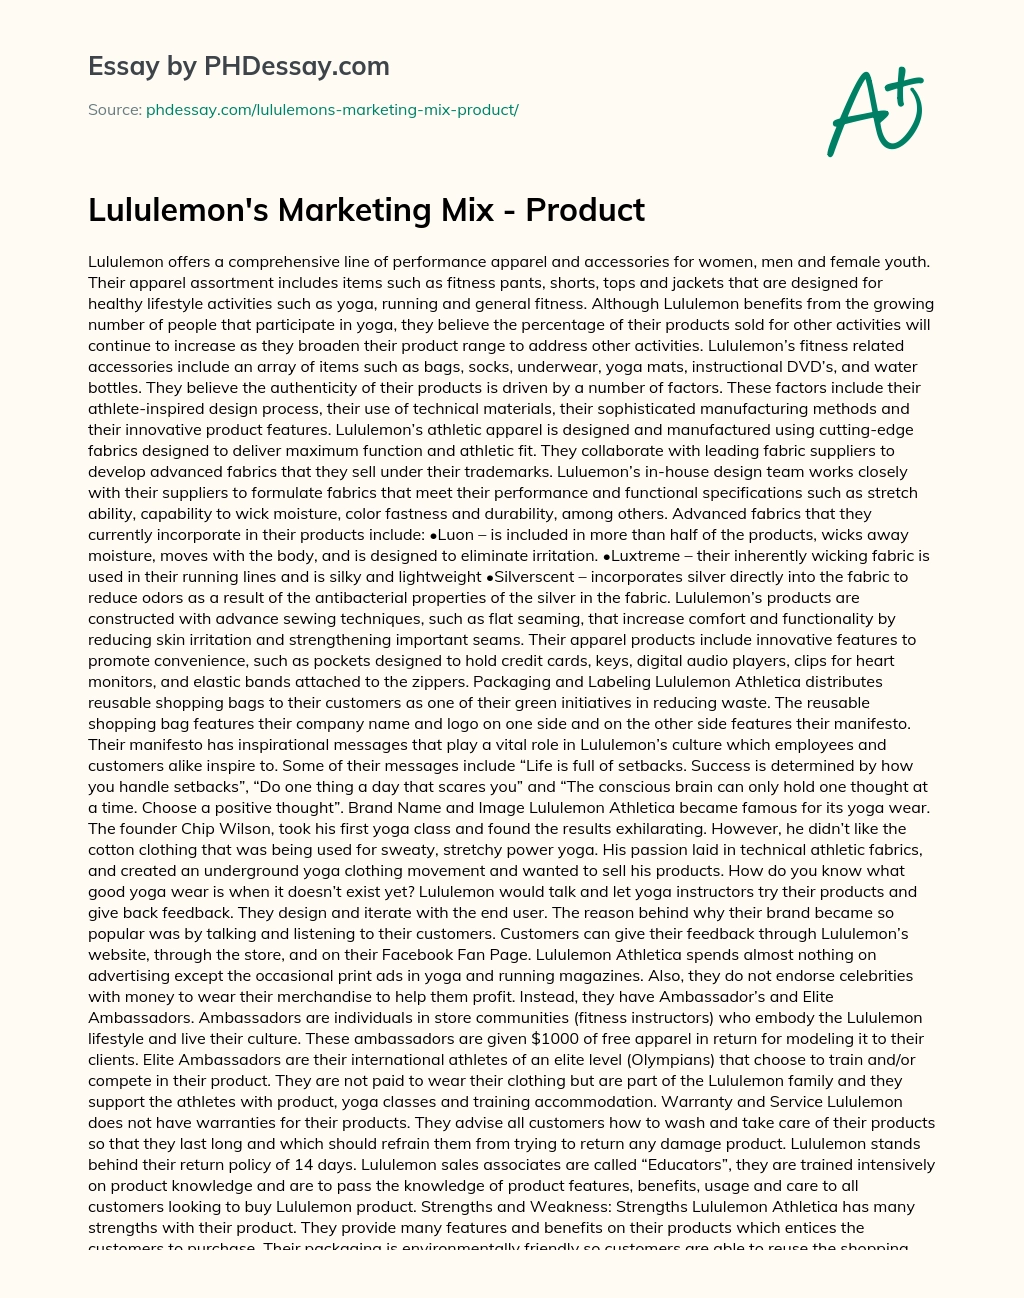 Lululemon’s Marketing Mix essay